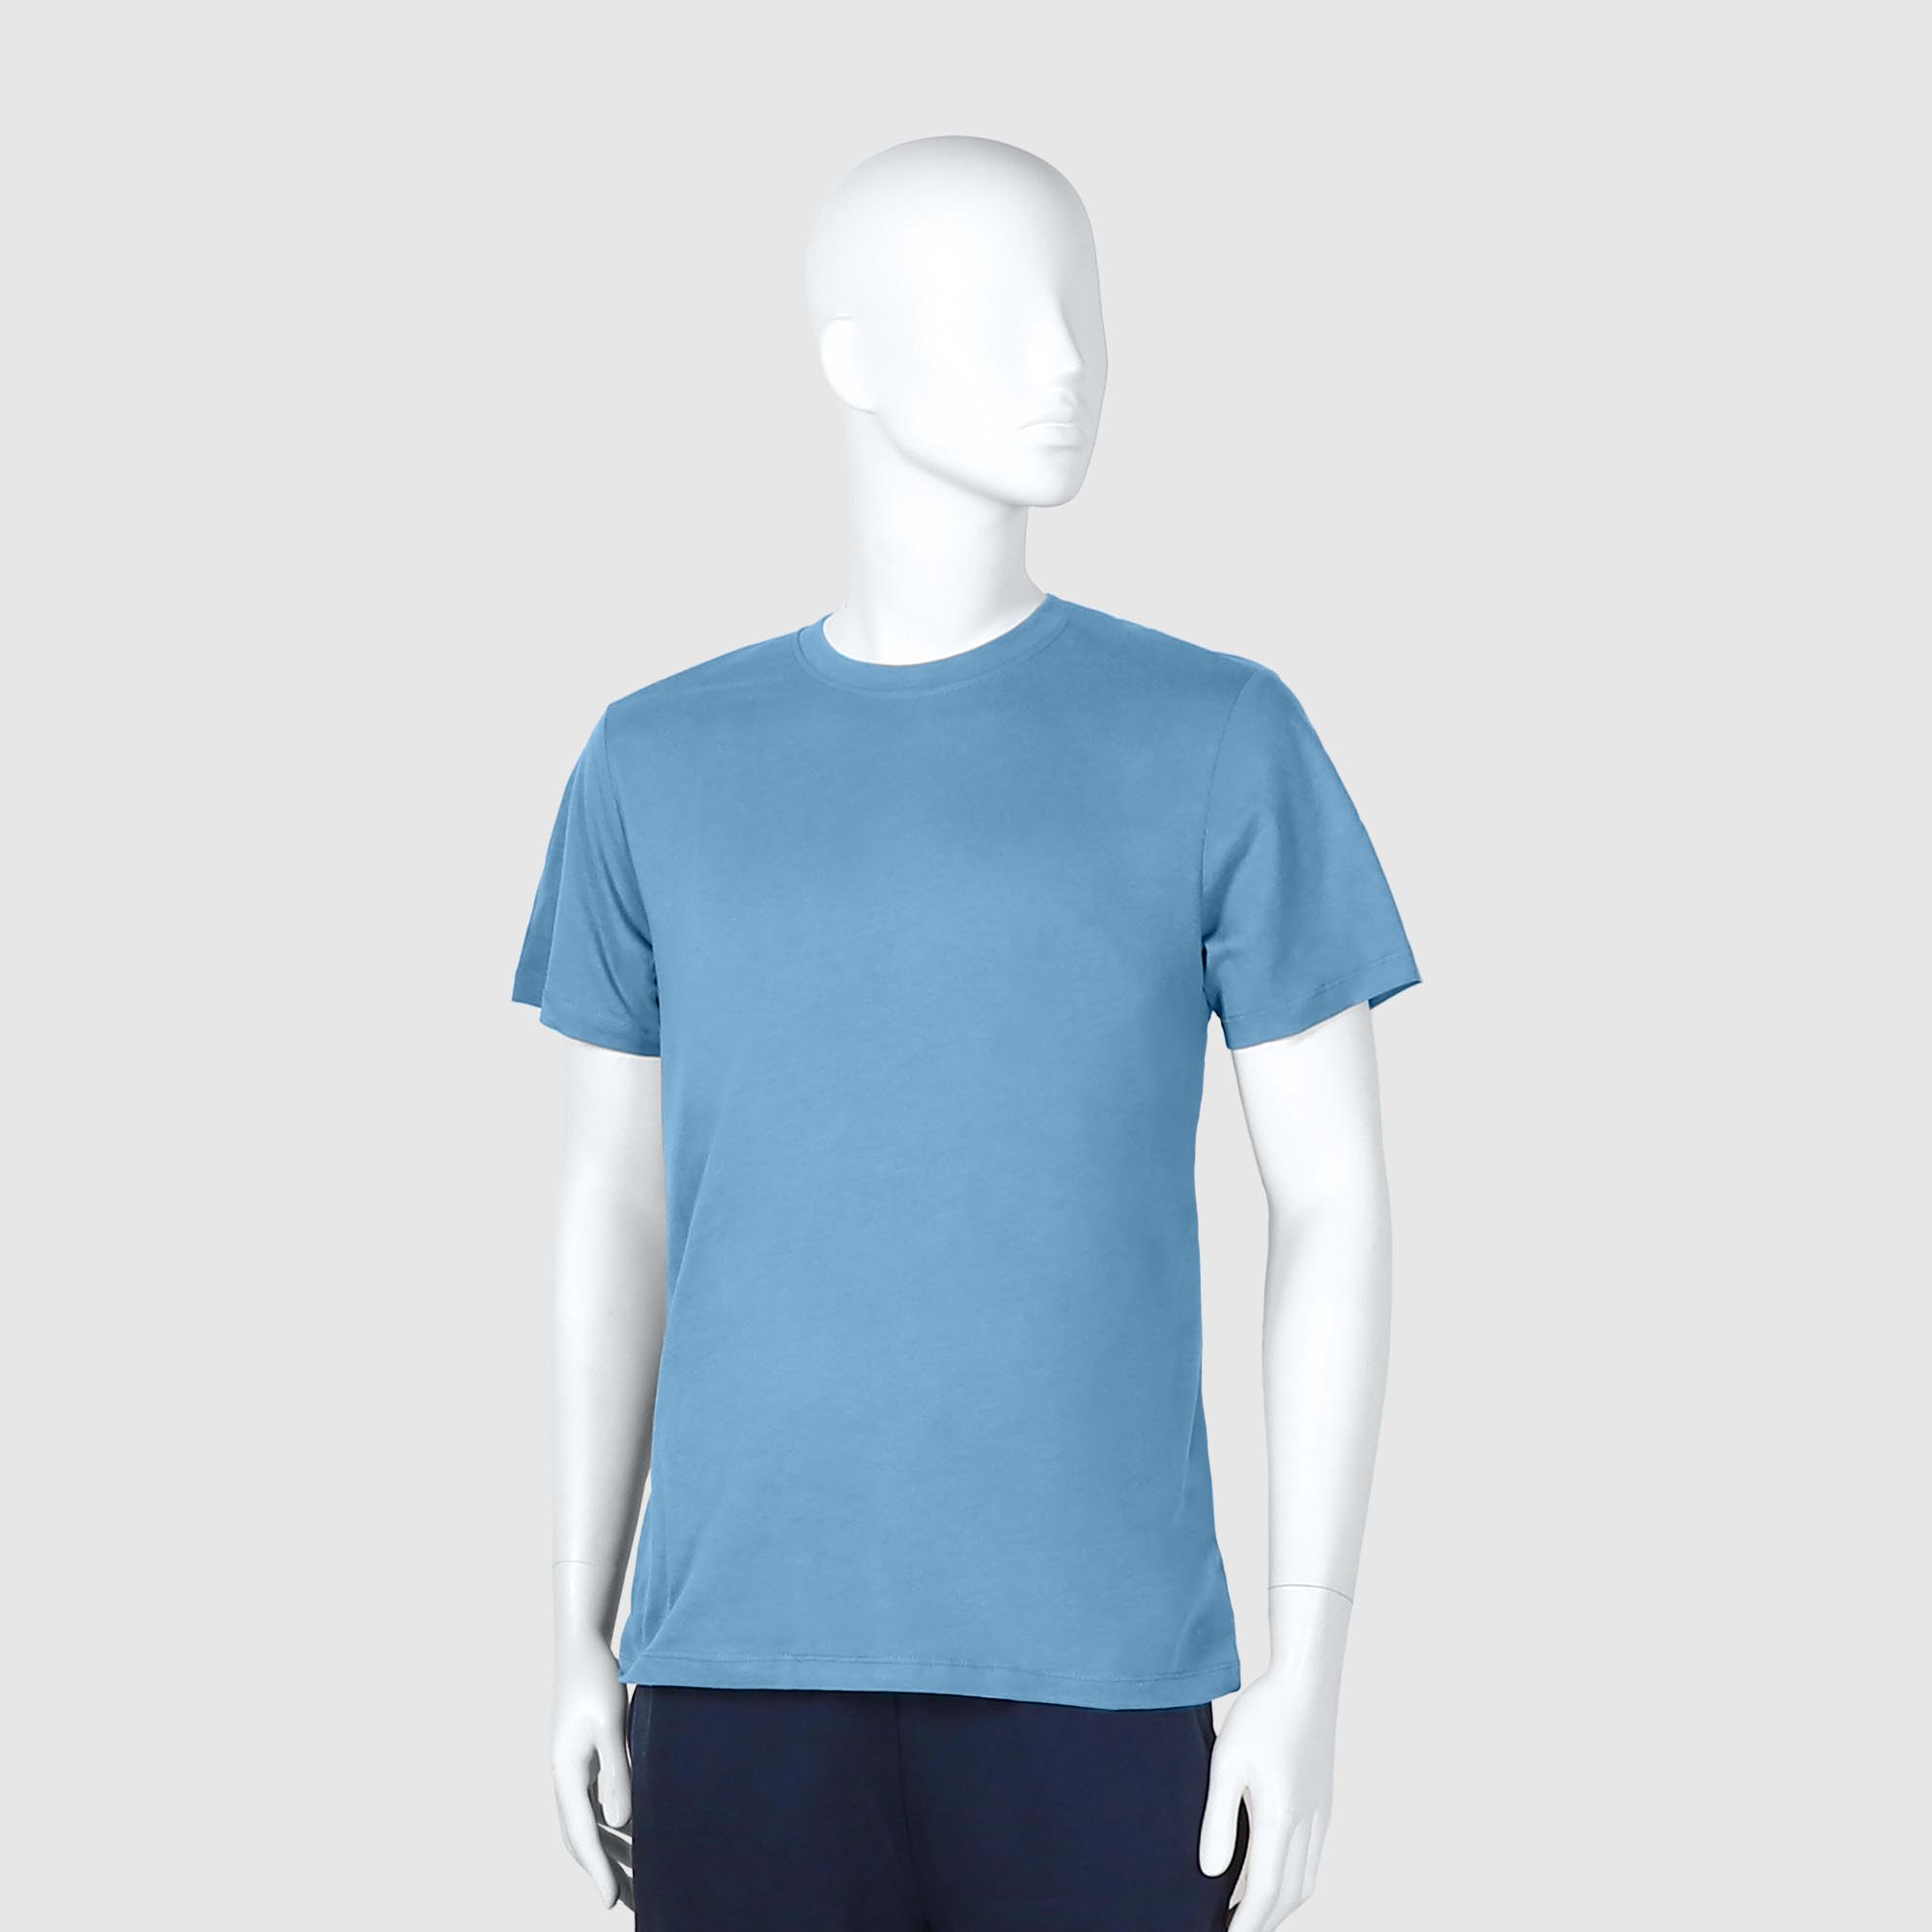 Мужская футболка Diva Teks голубая (DTD-03), цвет голубой, размер 52-54 - фото 1